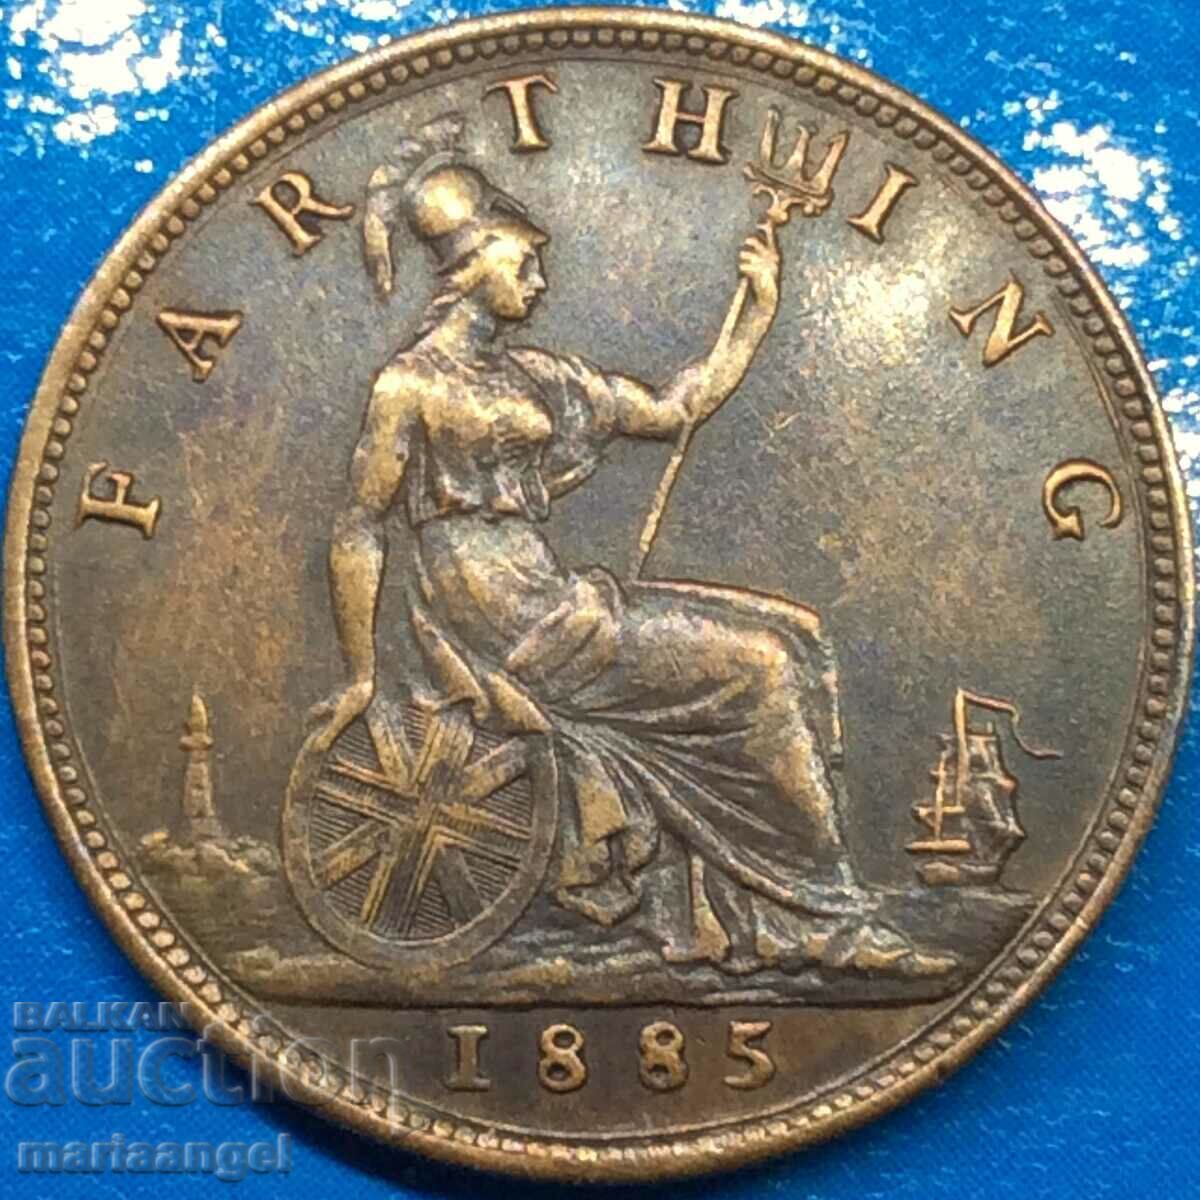 Marea Britanie 1 Farthing 1885 Young Victoria Bronze - LUXURY!!!